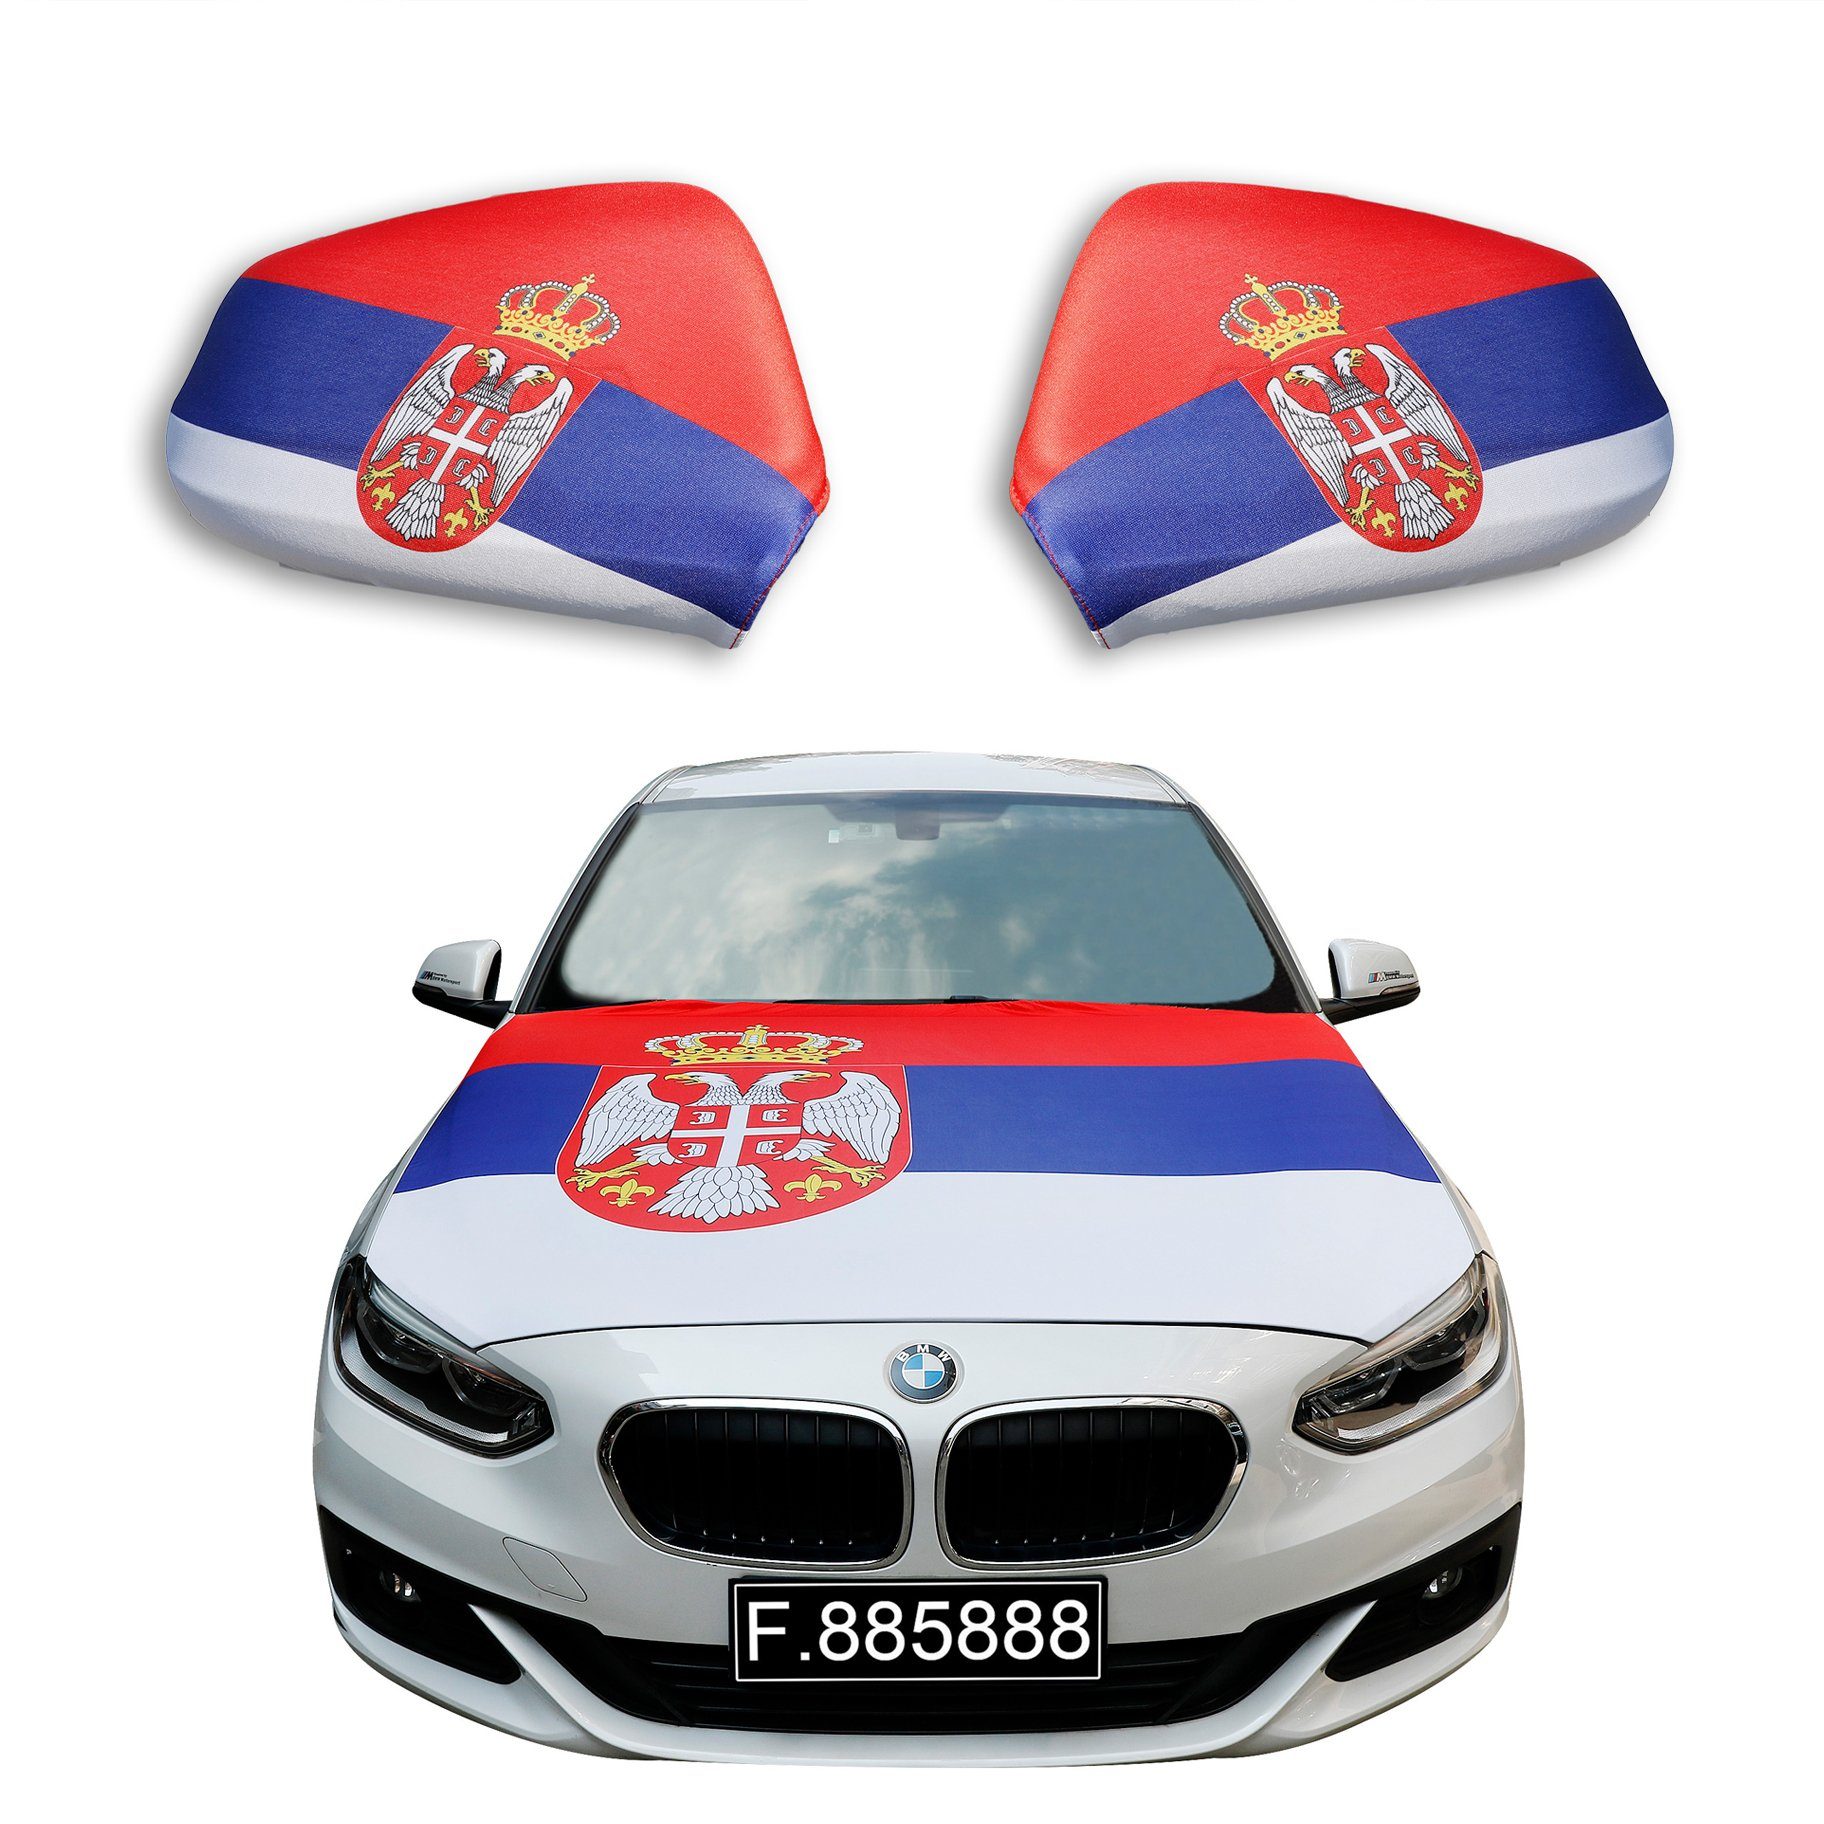 Sonia Originelli Fahne Fanset "Serbien" Serbia Fußball Motorhaube Außenspiegel Flagge, für alle gängigen PKW Modelle, Motorhauben Flagge: ca. 115 x 150cm